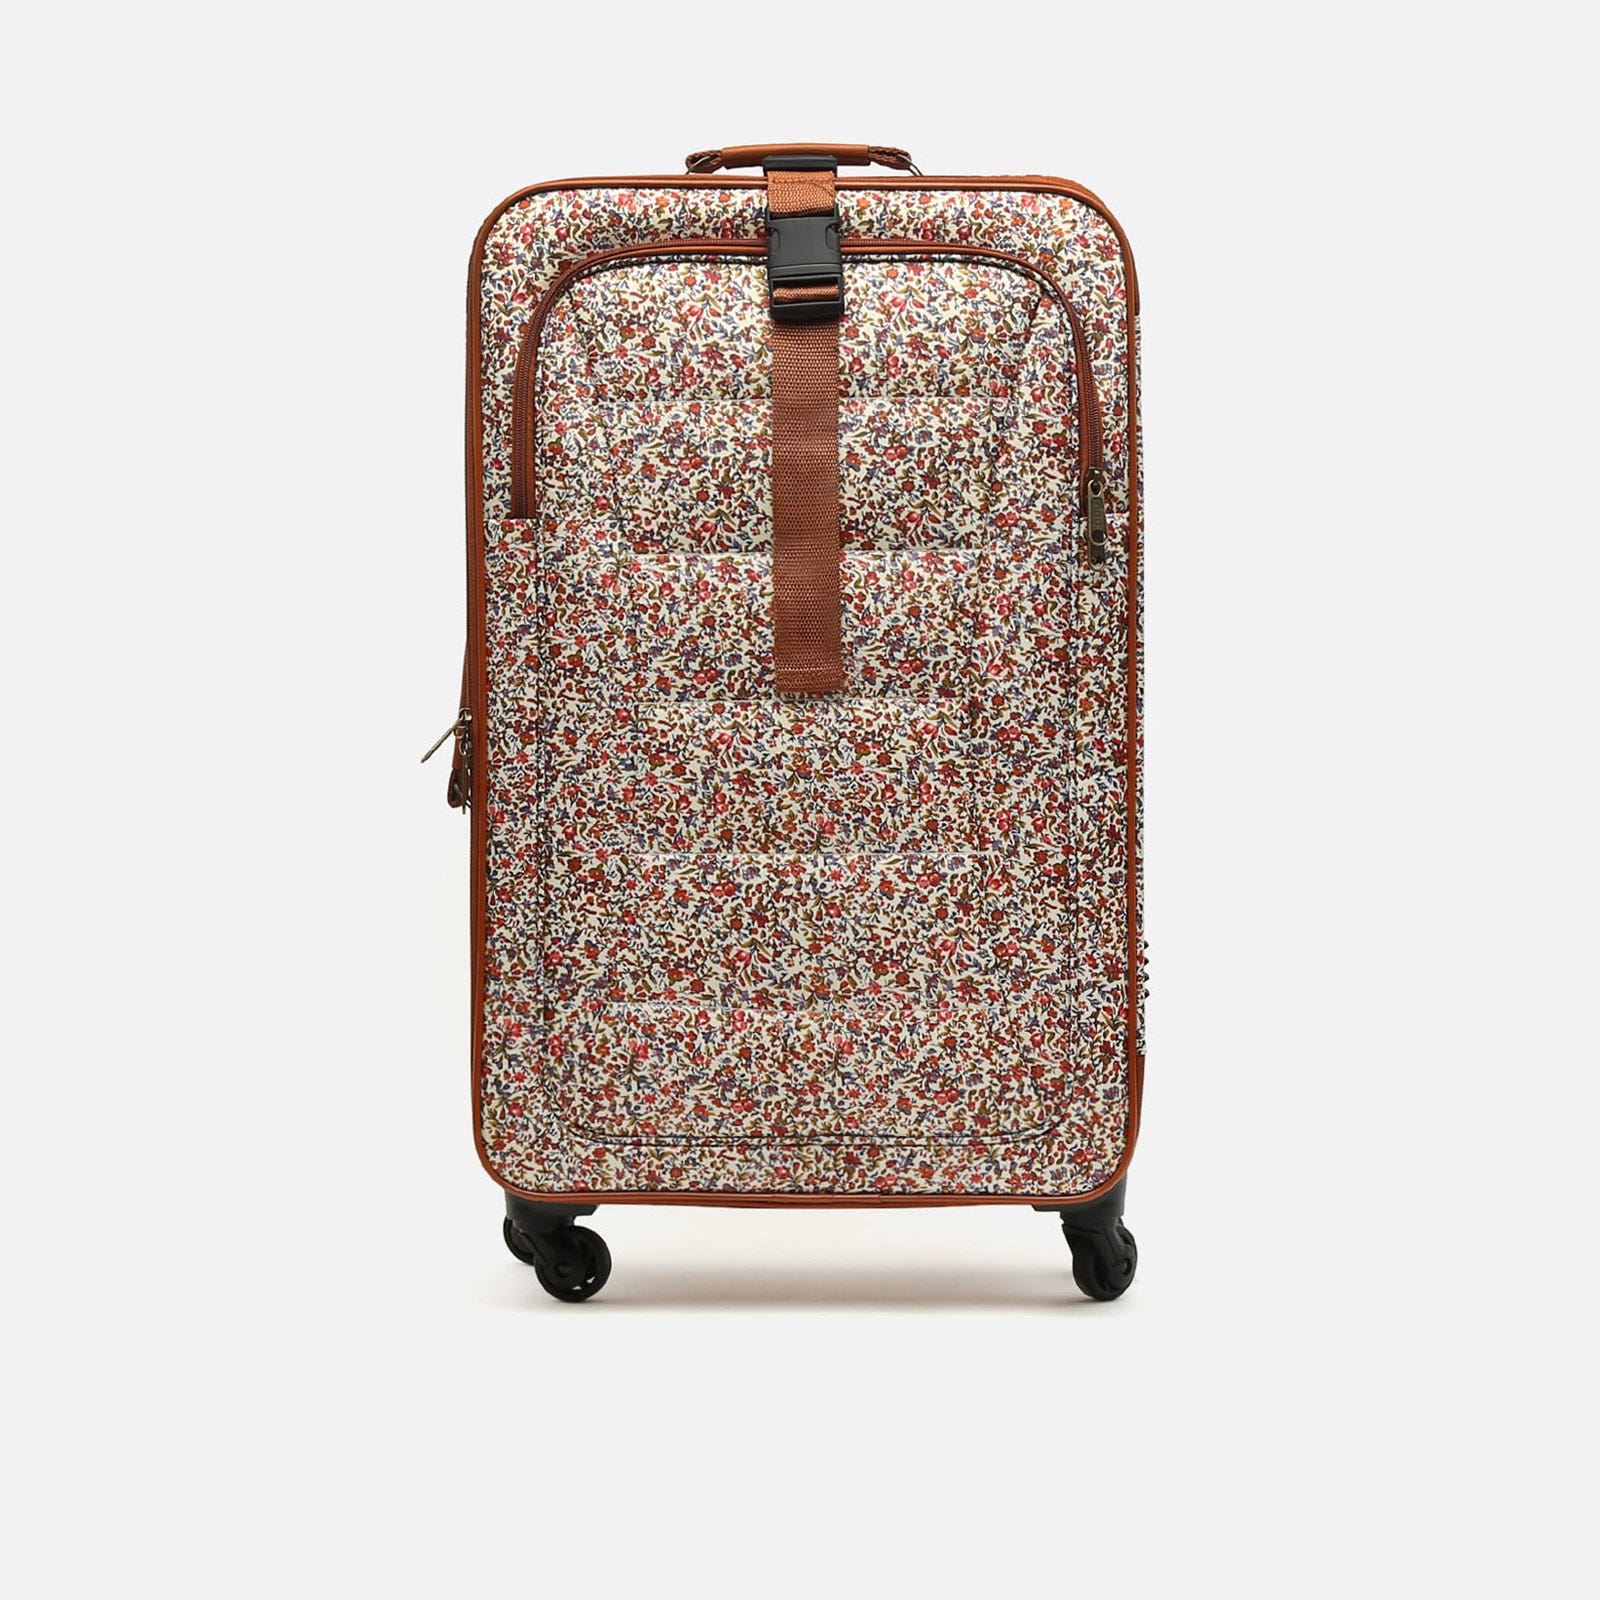 Medium suitcase floral print